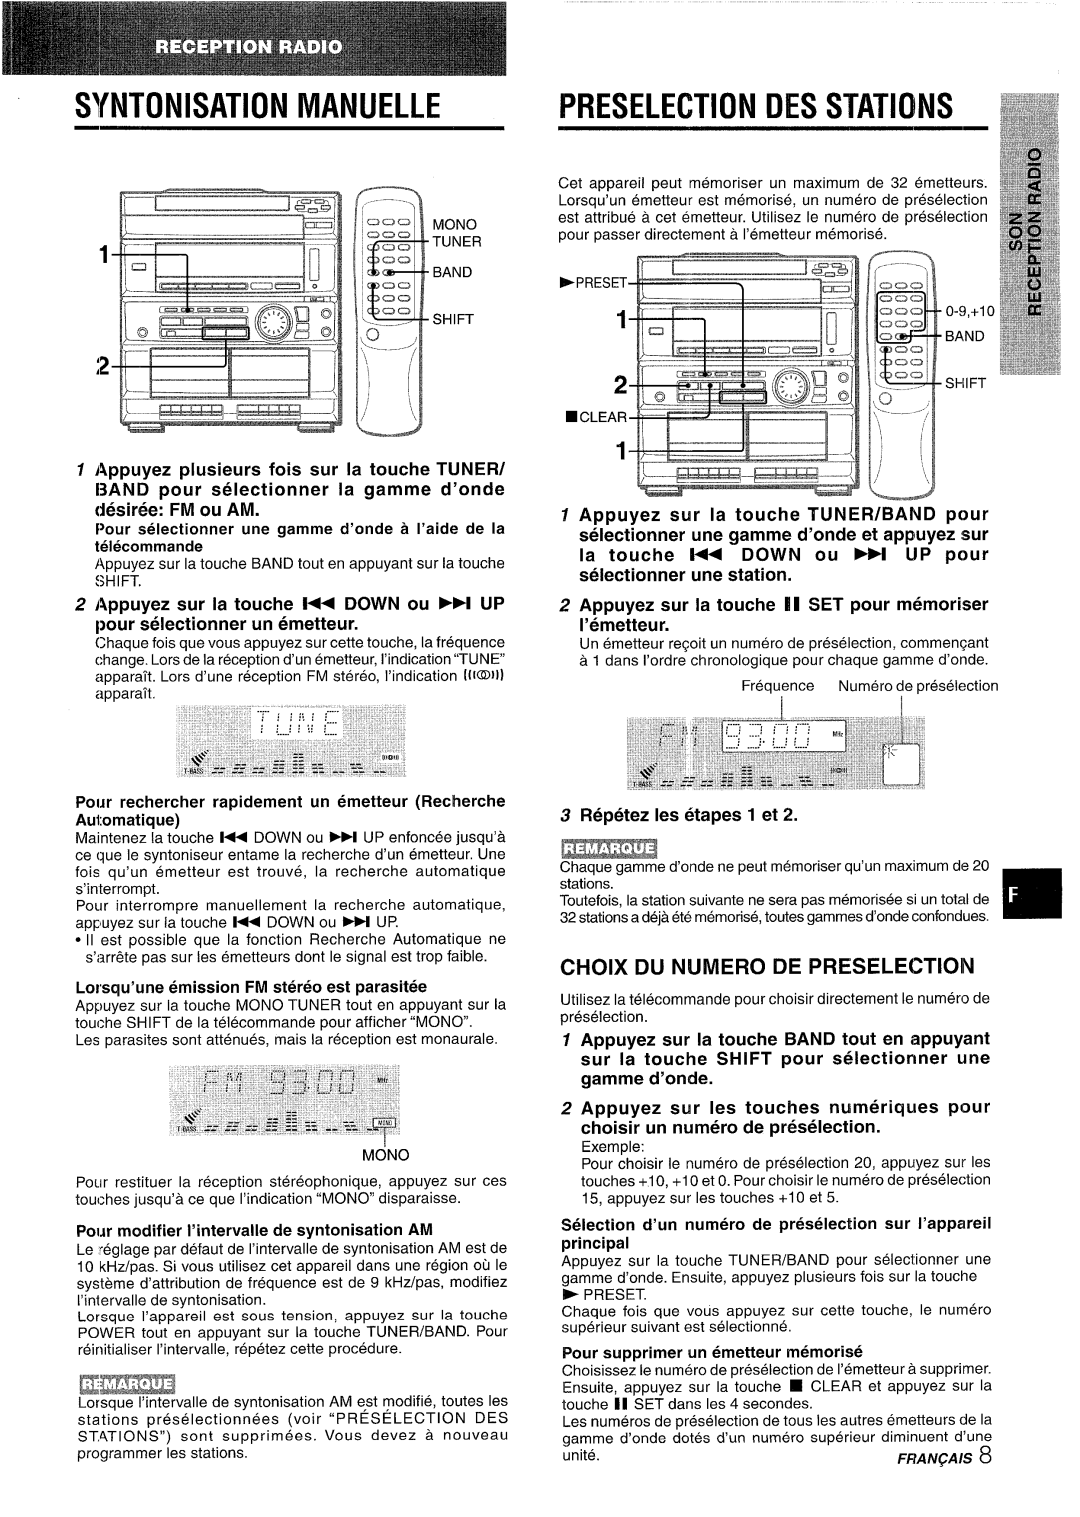 Sony CX-ZR525 manual Wntonisation Manuelle, Preselection Des Stations, L~--W, Choix Du N!Jmero De Preselectioin 